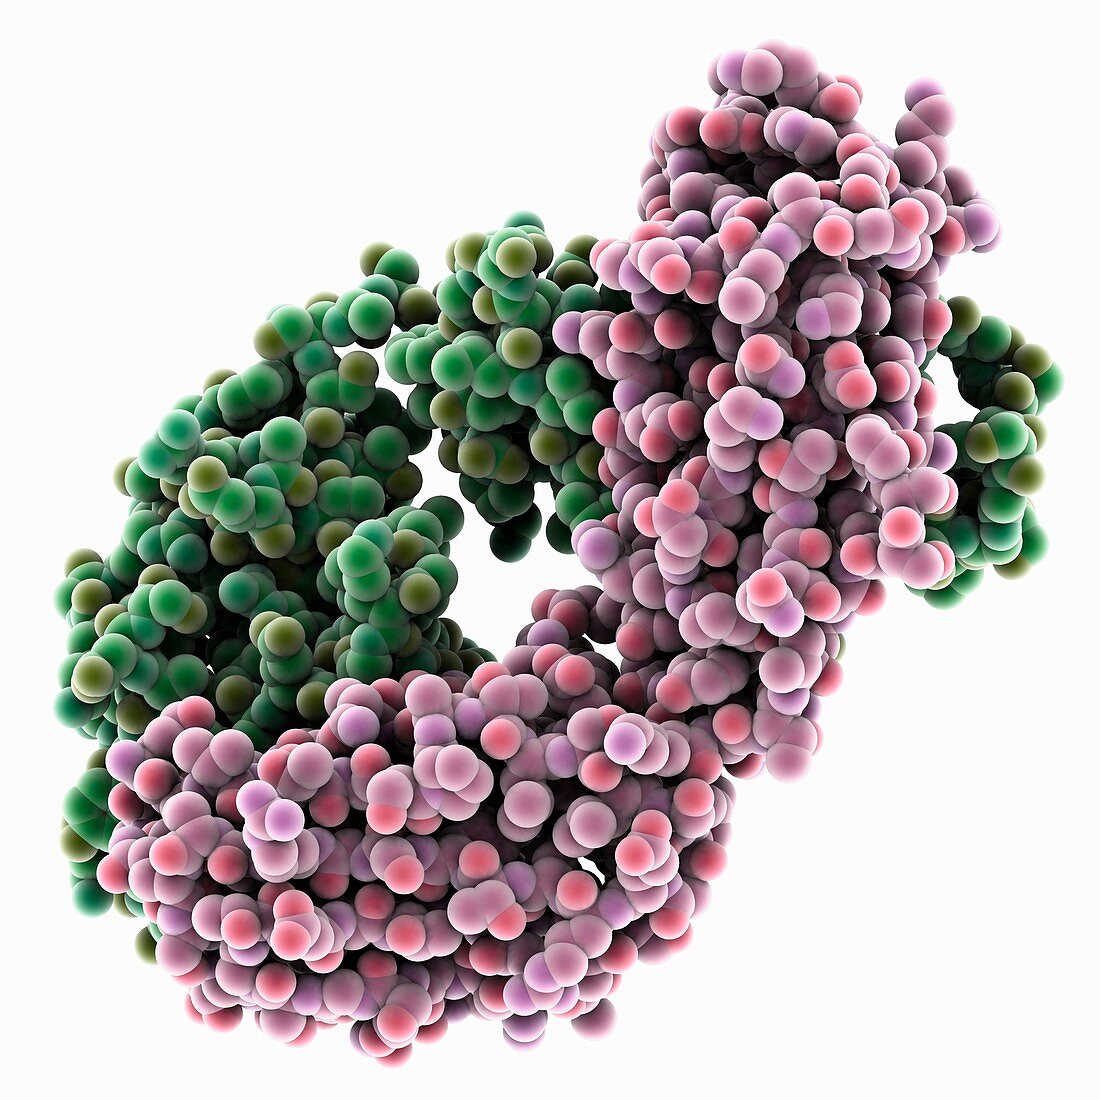 Nivolumab fab fragment, molecular model